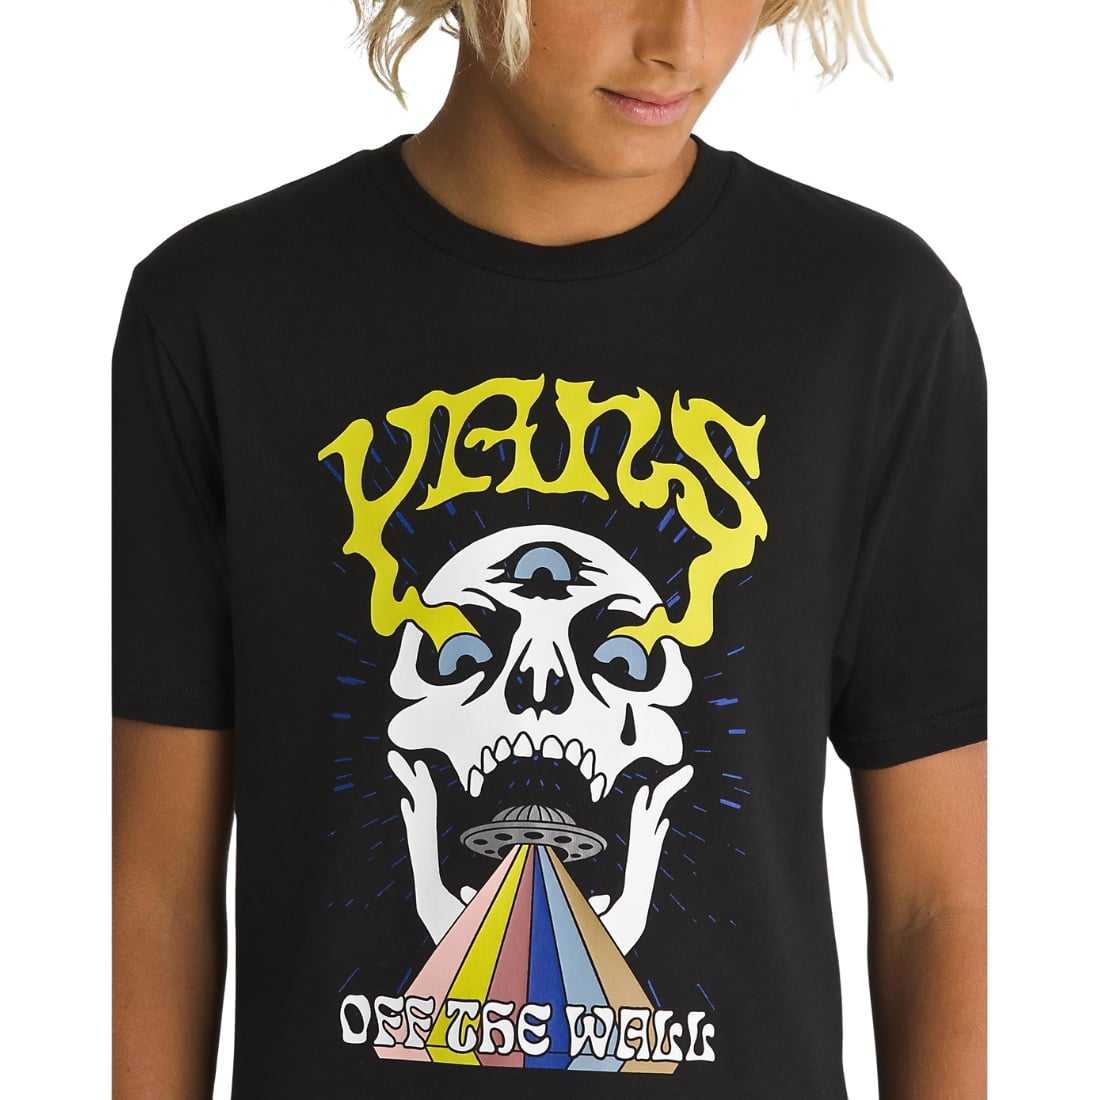 Vans Kids Skull T-Shirt - Black - Boys Skate Brand T-Shirt by Vans